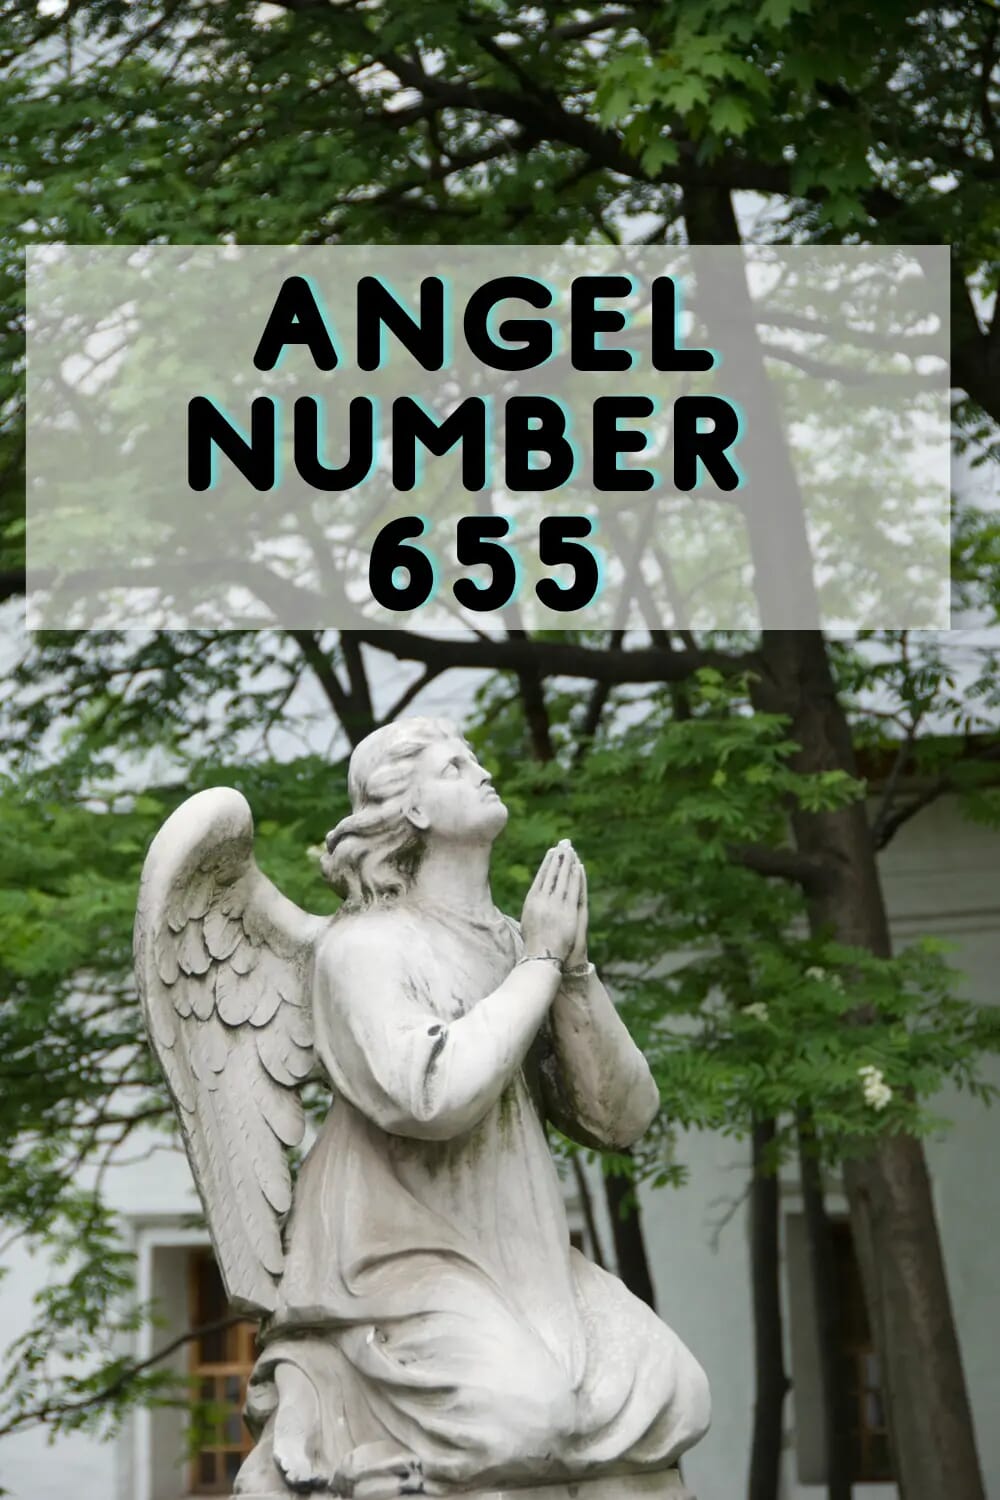 Angel number 655